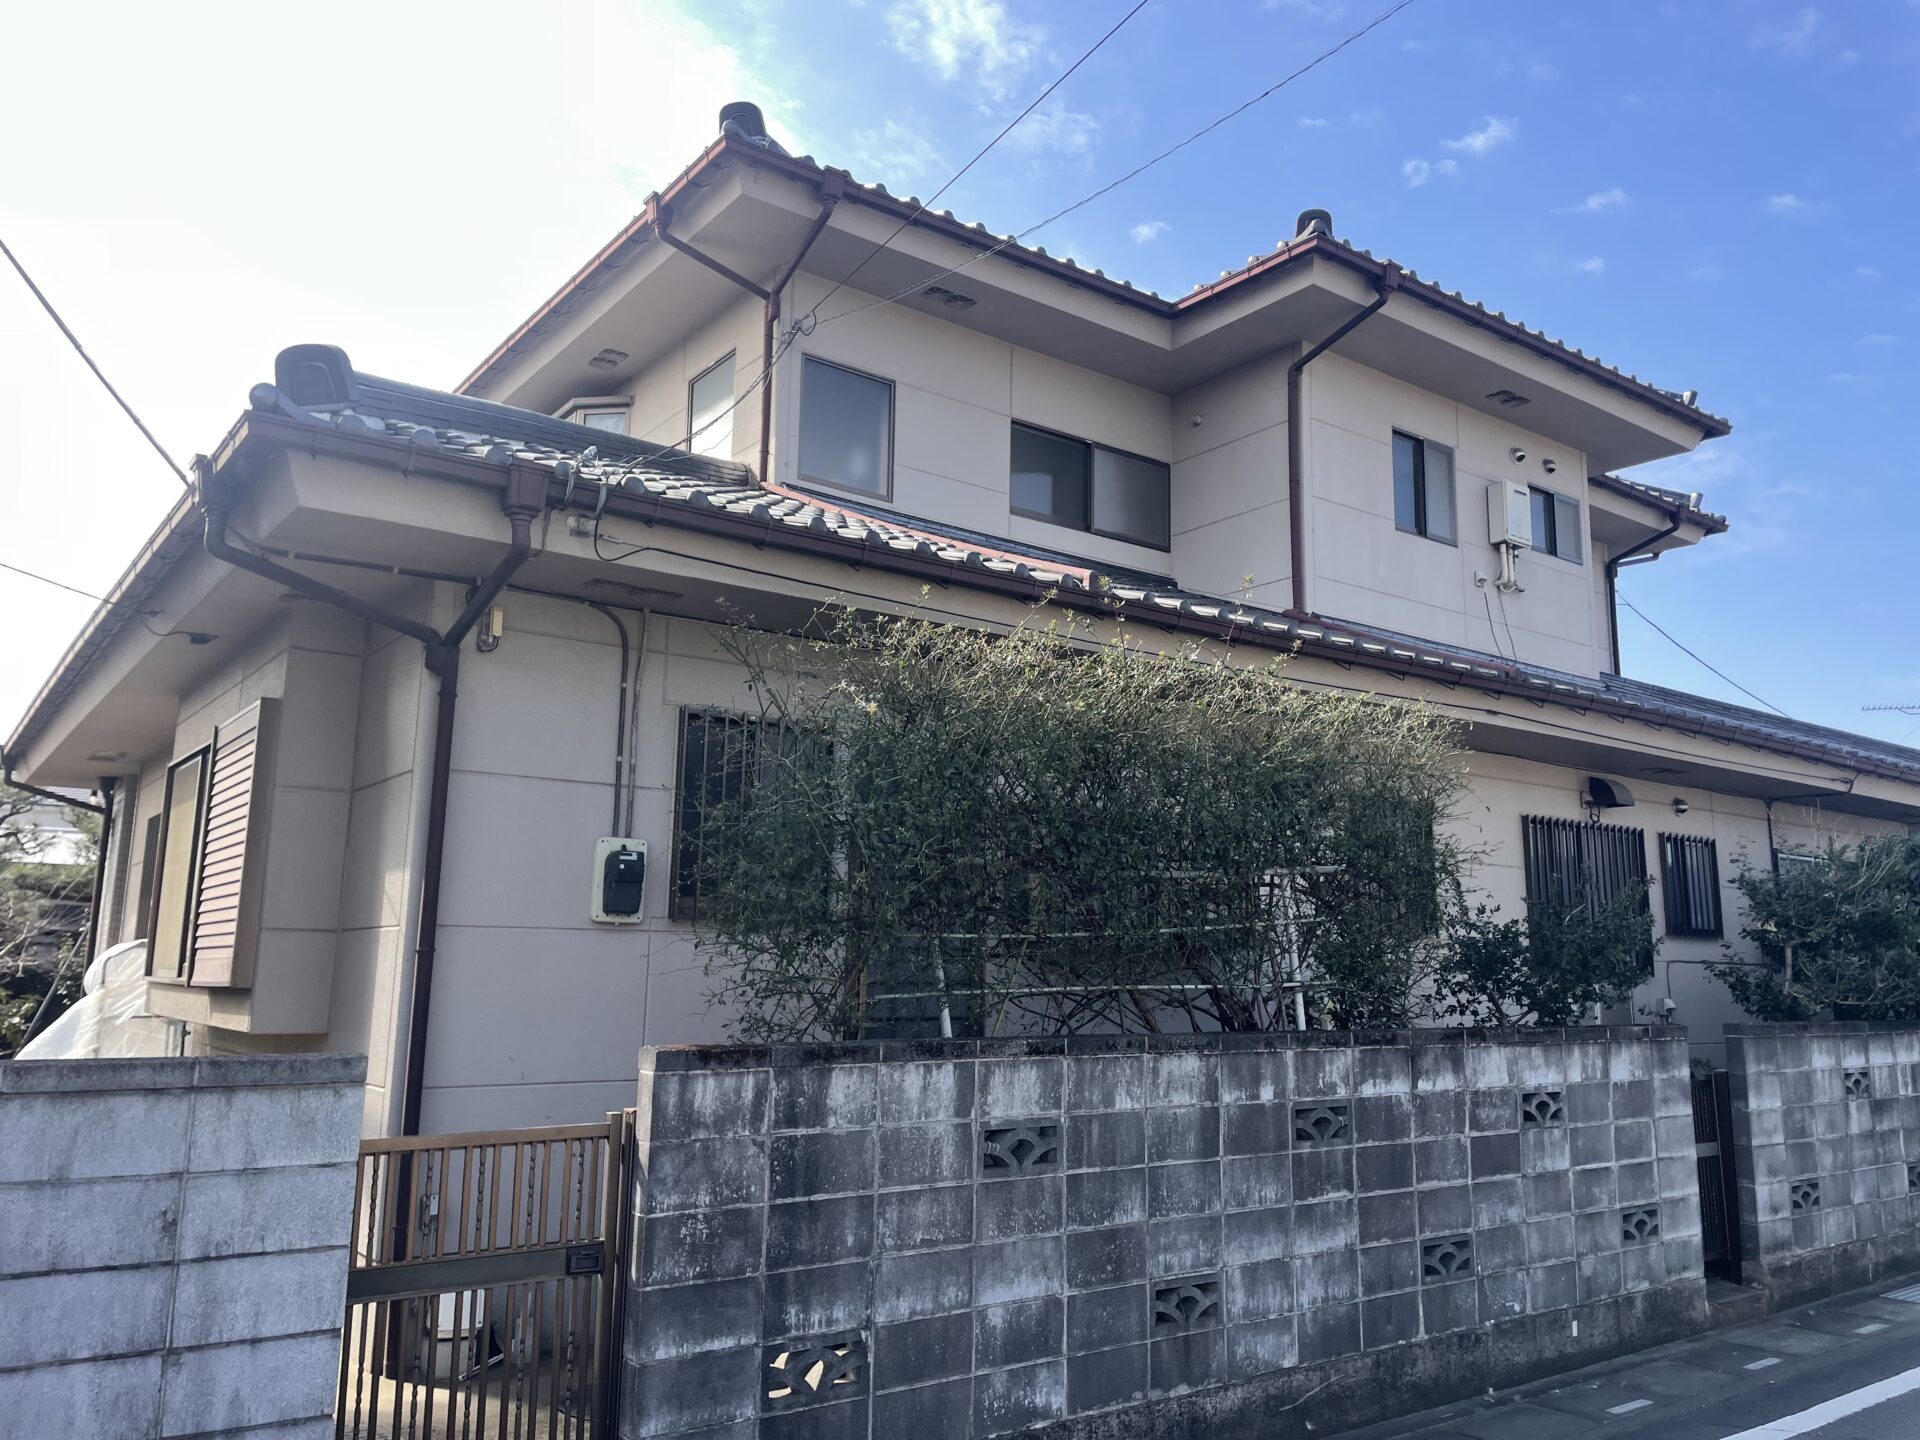 埼玉県川越市で母屋の外壁と倉庫をグレー色で統一して落ち着いた雰囲気のお家になりました。施工前